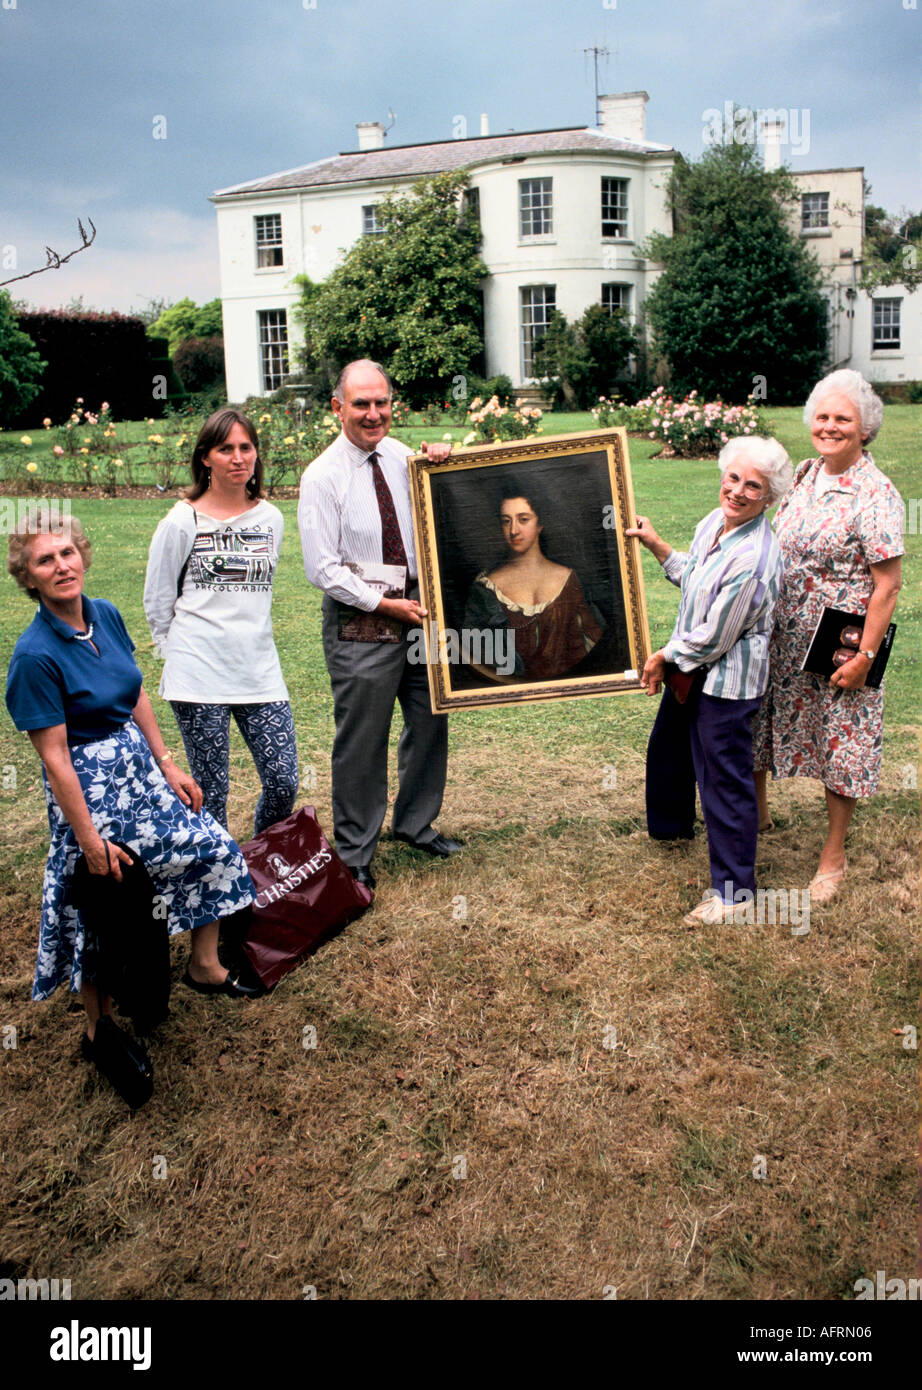 Familie Porträt Käufer Pose mit einem Ölgemälde von einem Verwandten gerade gekauft bei Newnham Hall Northamptonshire Landhaus Auktion 1990er Jahre UK HOMER SYKES Stockfoto